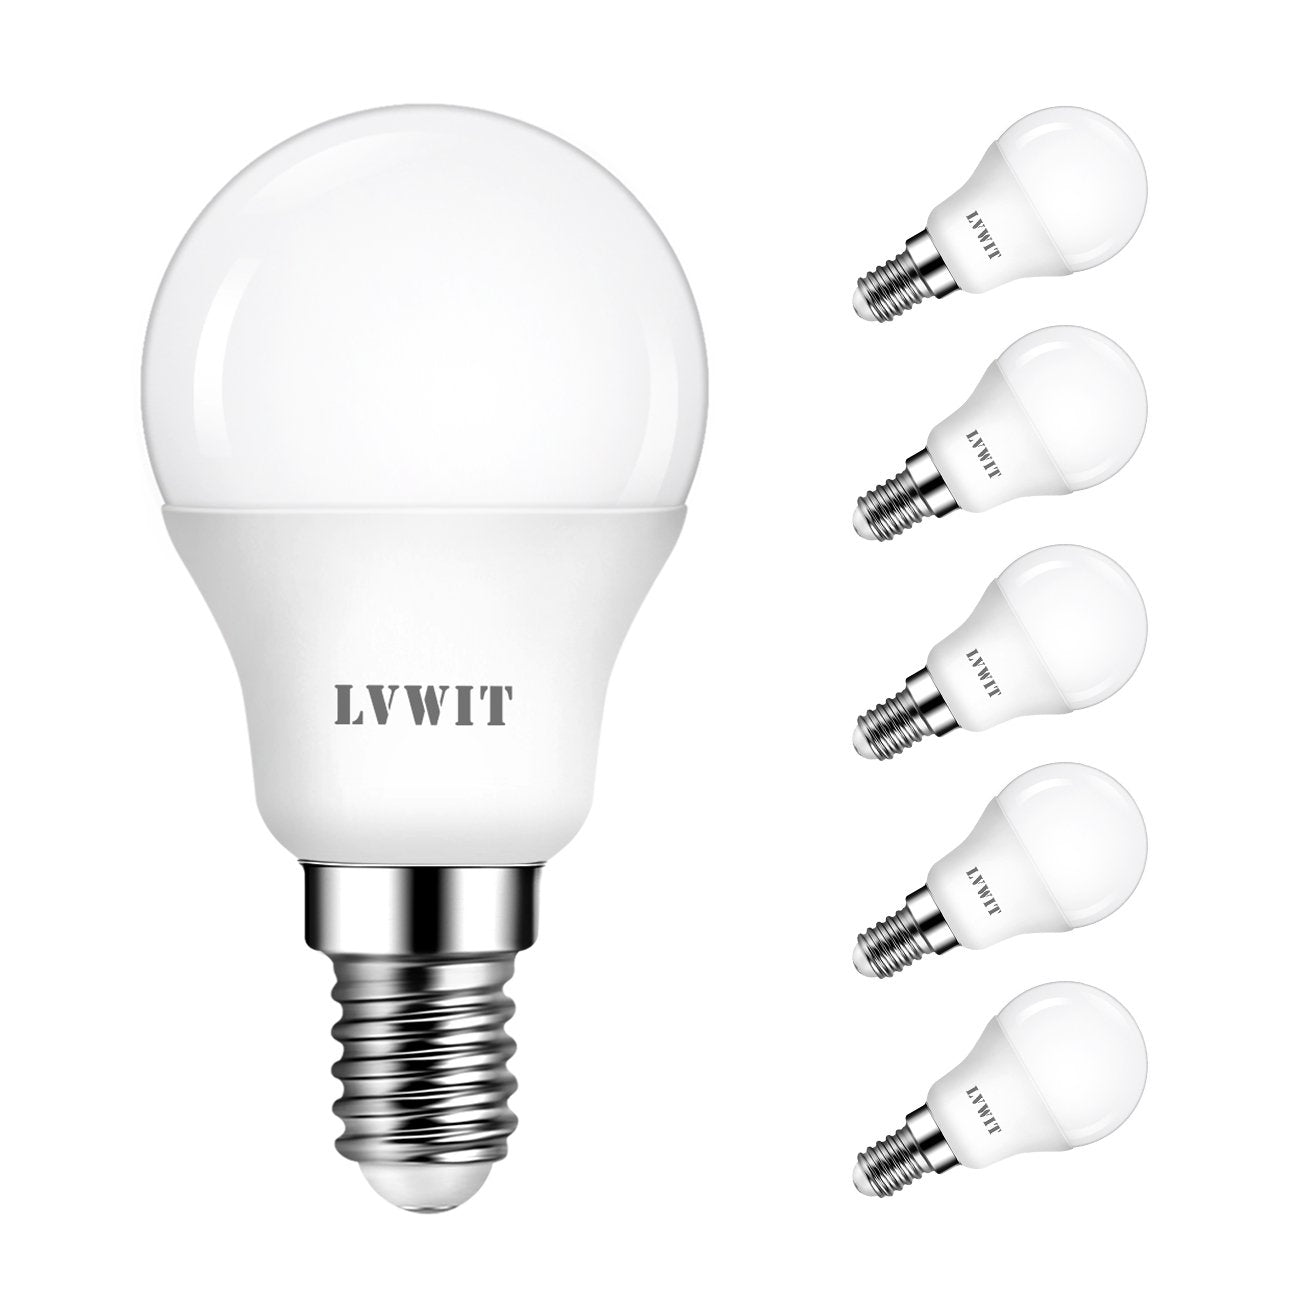 Ampoule E27 LED, 7W G45 Blanc Chaud 3000K, 60W Équivalent À Incandescence